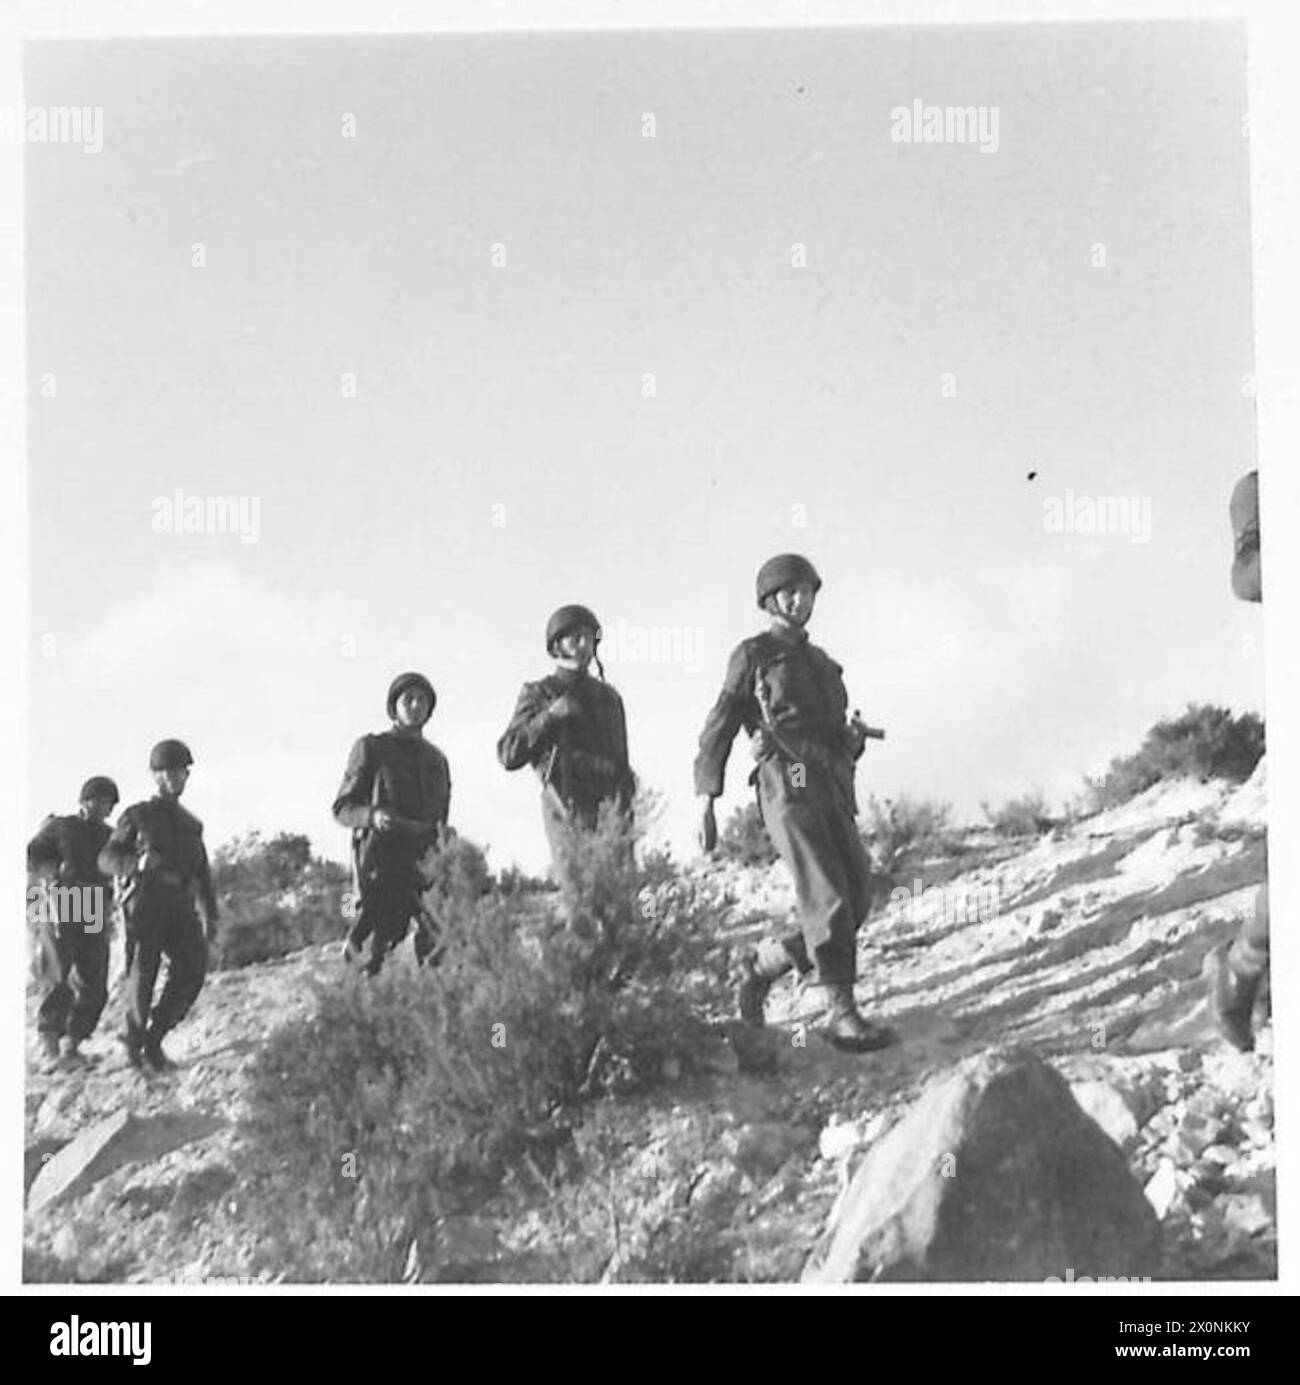 L'ARMÉE BRITANNIQUE DANS LA CAMPAGNE DE TUNISIE, NOVEMBRE 1942-MAI 1943 - Major Price et police de la Provost se dirigeant sur le flanc de la montagne en direction du village. Deux sous-sections d'une compagnie de prévôt divisionnaire dirigée par le major Price APM et assistée d'un officier français et de deux policiers militaires français sont allés attaquer un village arabe situé dans la chaîne de montagnes qui sépare Teboursouk d'El Aroussa alors que des traînards allemands et italiens étaient soupçonnés de s'y cacher. Après avoir entouré l'endroit et fouillé chaque gobi (hutte) soigneusement les résultats étaient nuls, à l'exception d'un fusil français. Deux civili arabes Banque D'Images